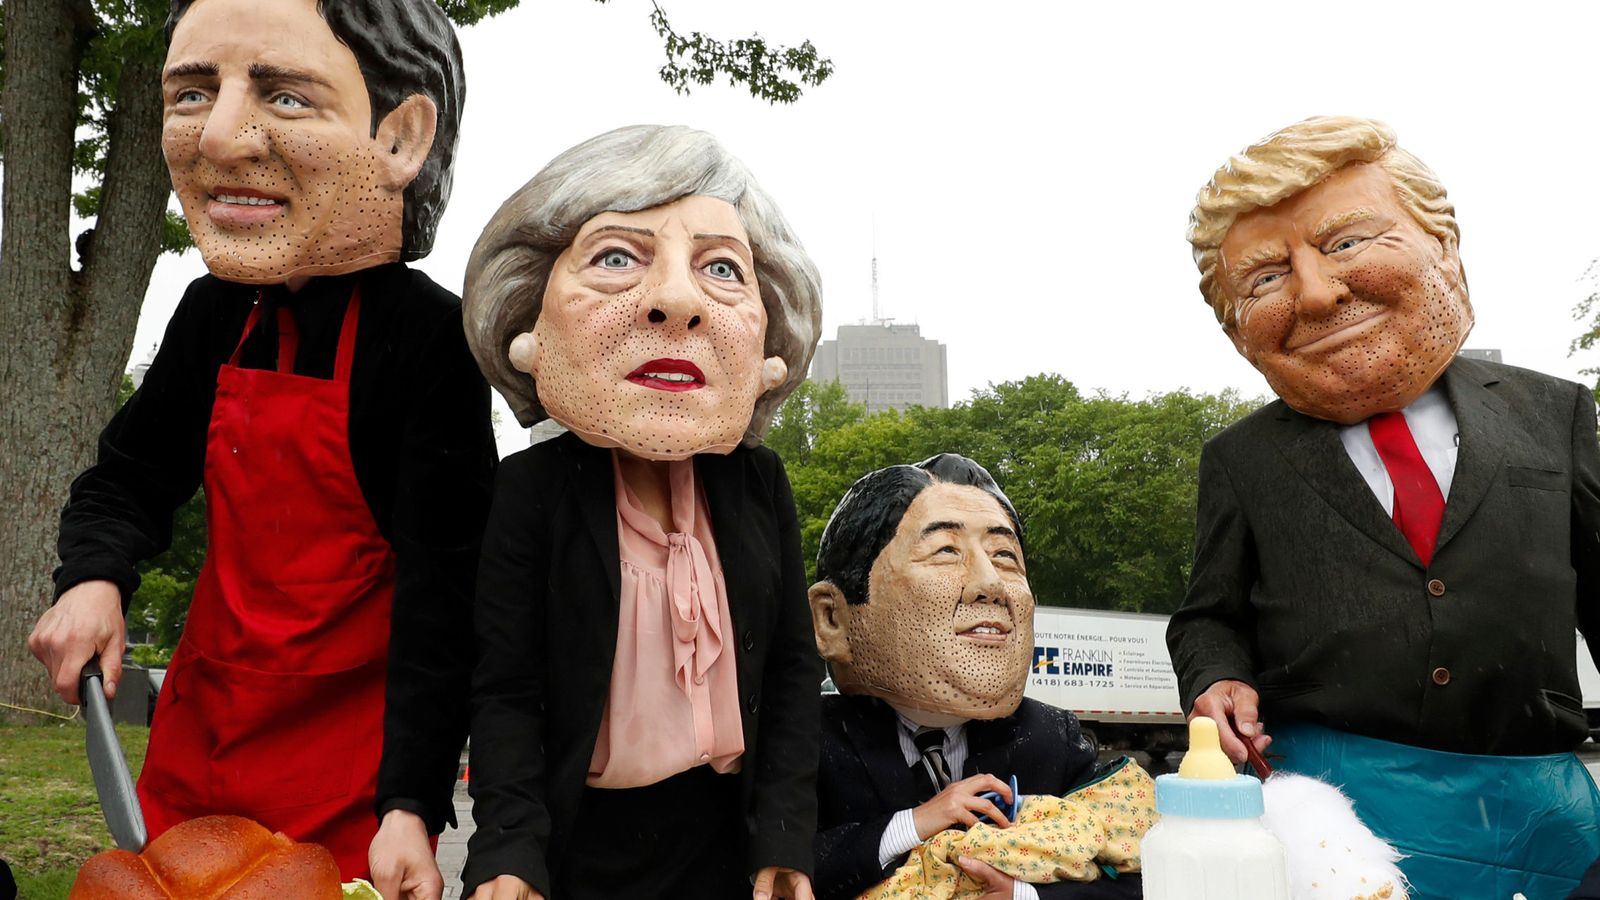 Foto: Protesta de activistas con máscaras de los líderes del G7. (Reuters)